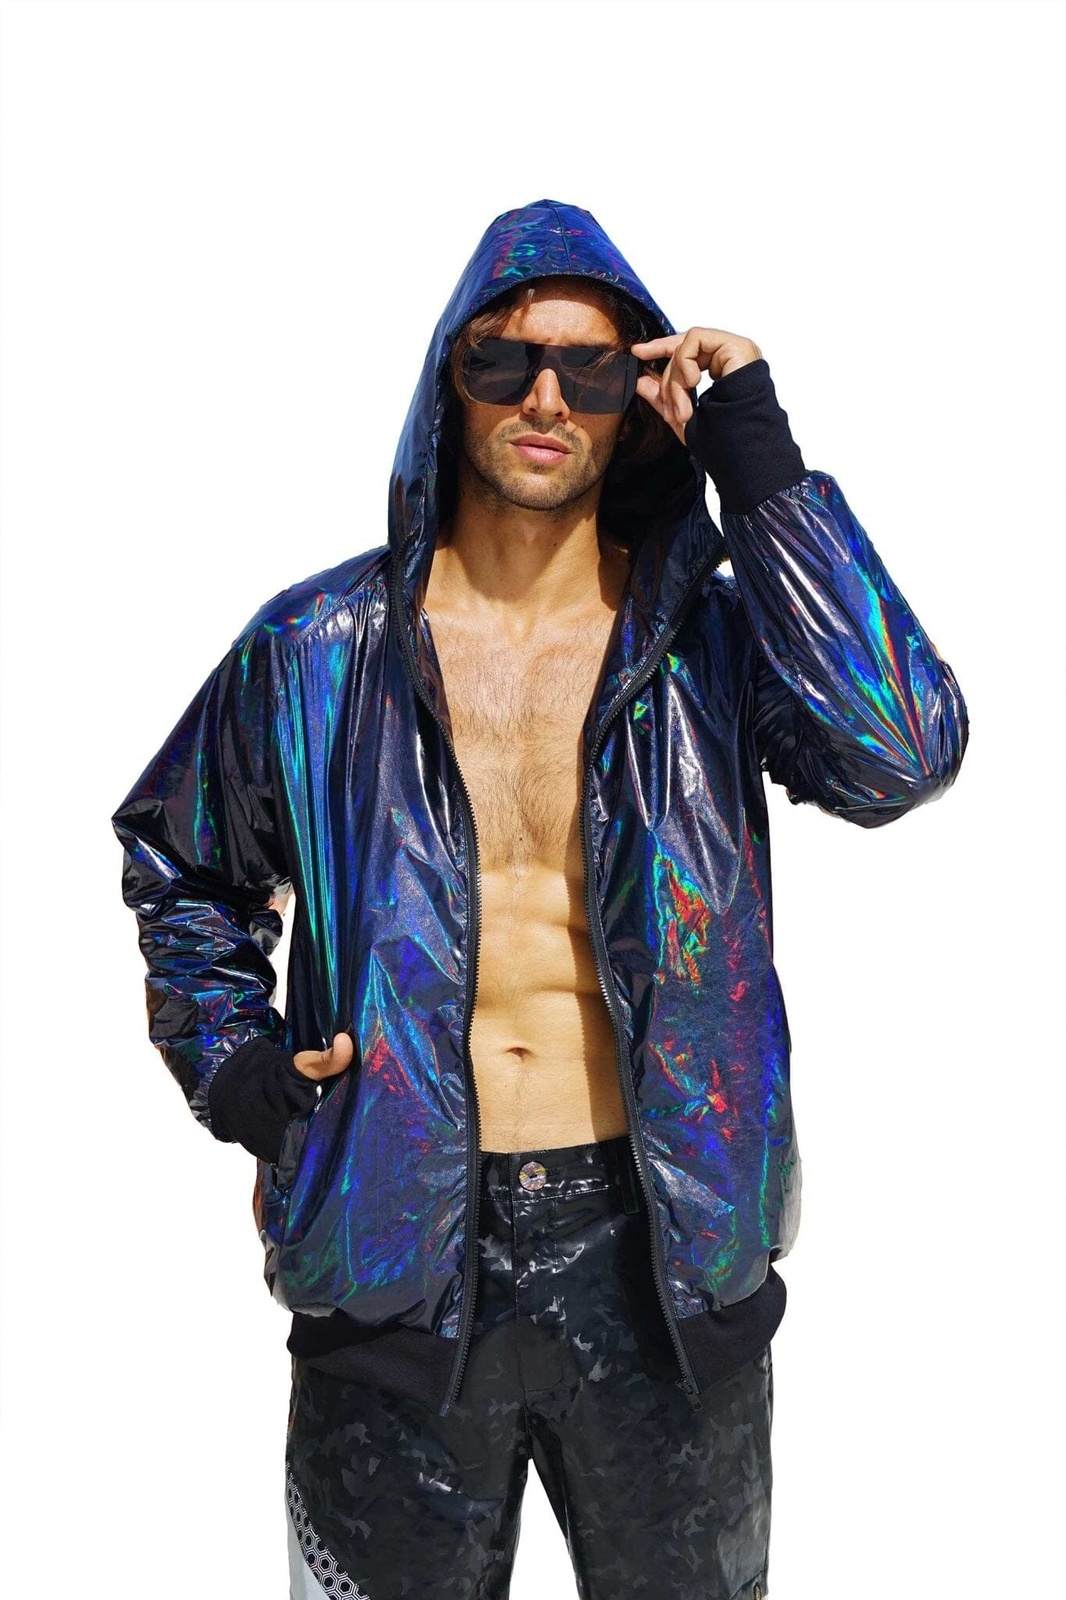 Stijg Calamiteit Absorberend Mens Waterproof Festival Jacket | Love Khaos Streetwear & Rave wear